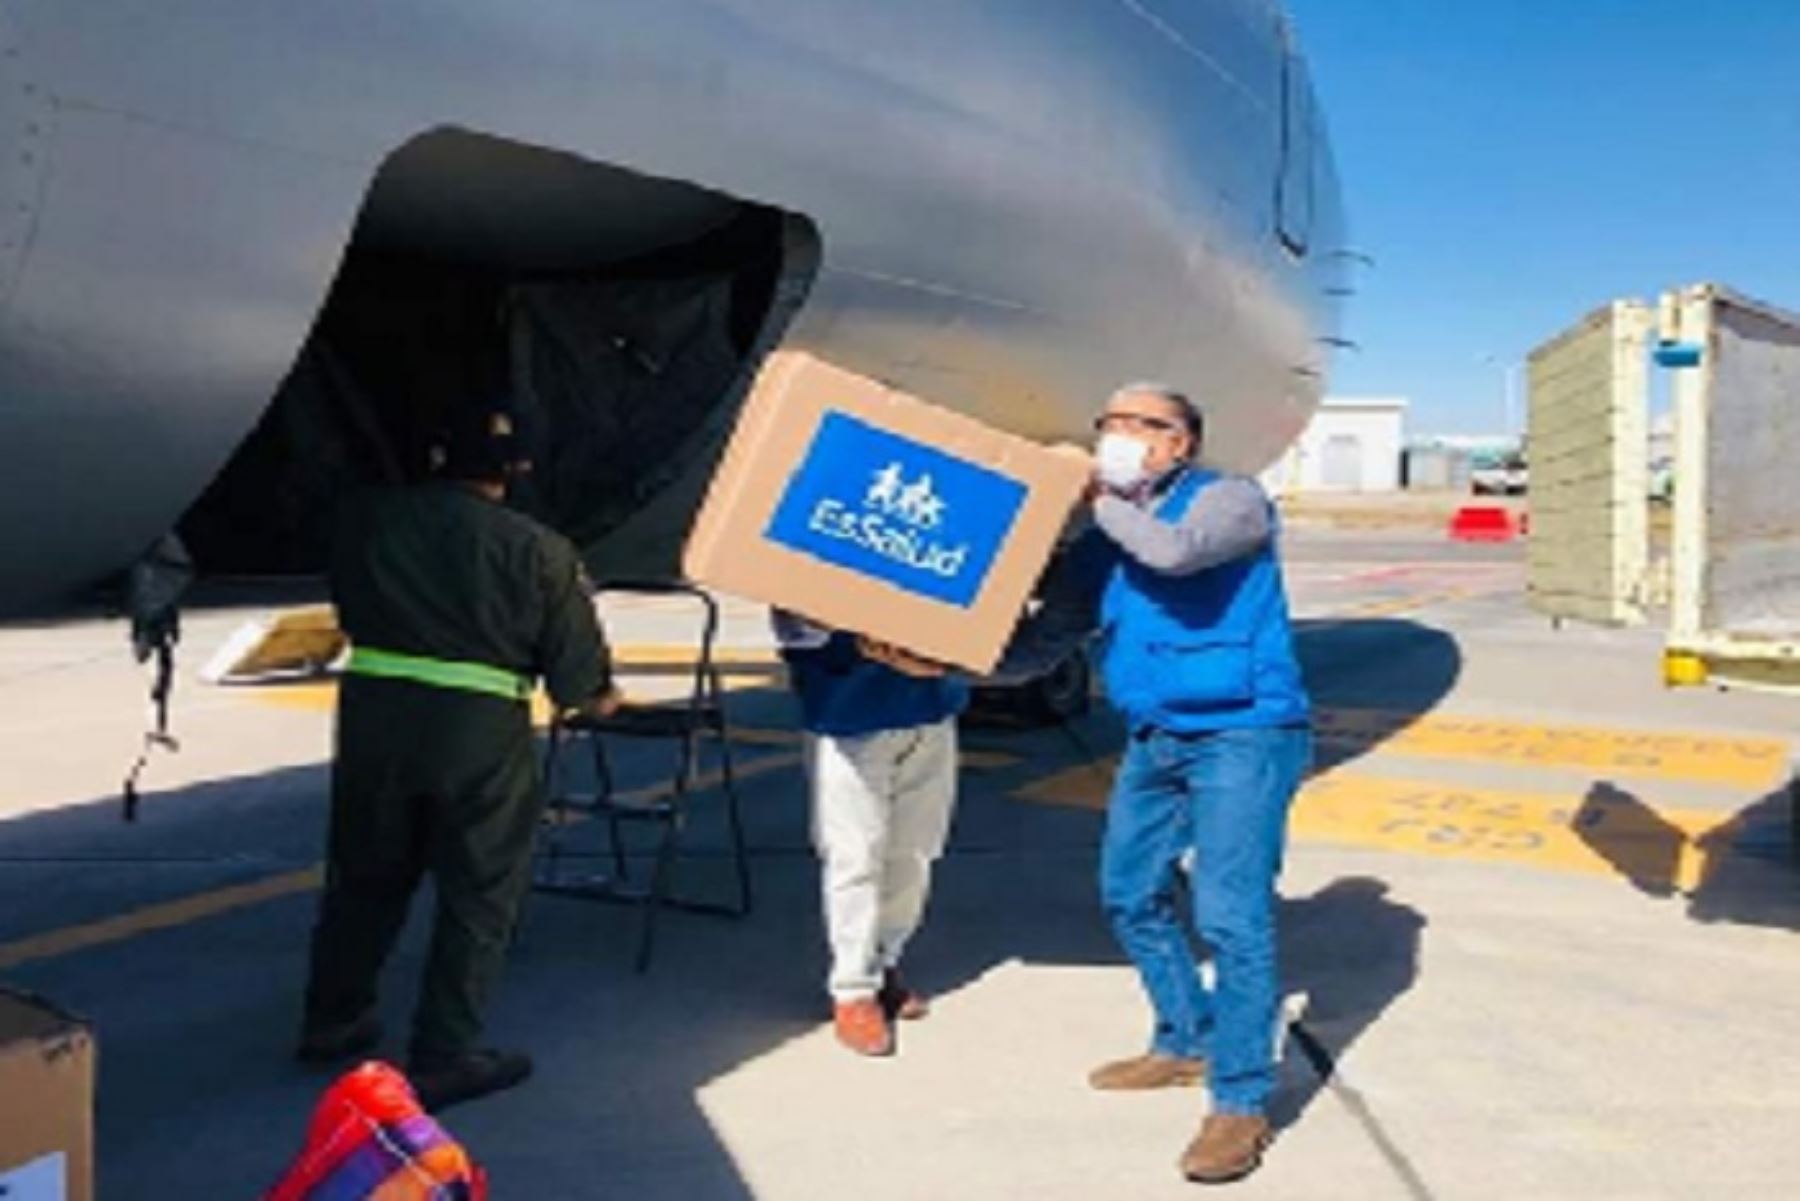 Parte de los equipos médicos llegaron hoy a la ciudad en un avión de la Fuerza Aérea del Perú, que trasladó a la delegación que encabeza el presidente del Consejo de Ministros, Vicente Zeballos, junto a ministros de Estado.